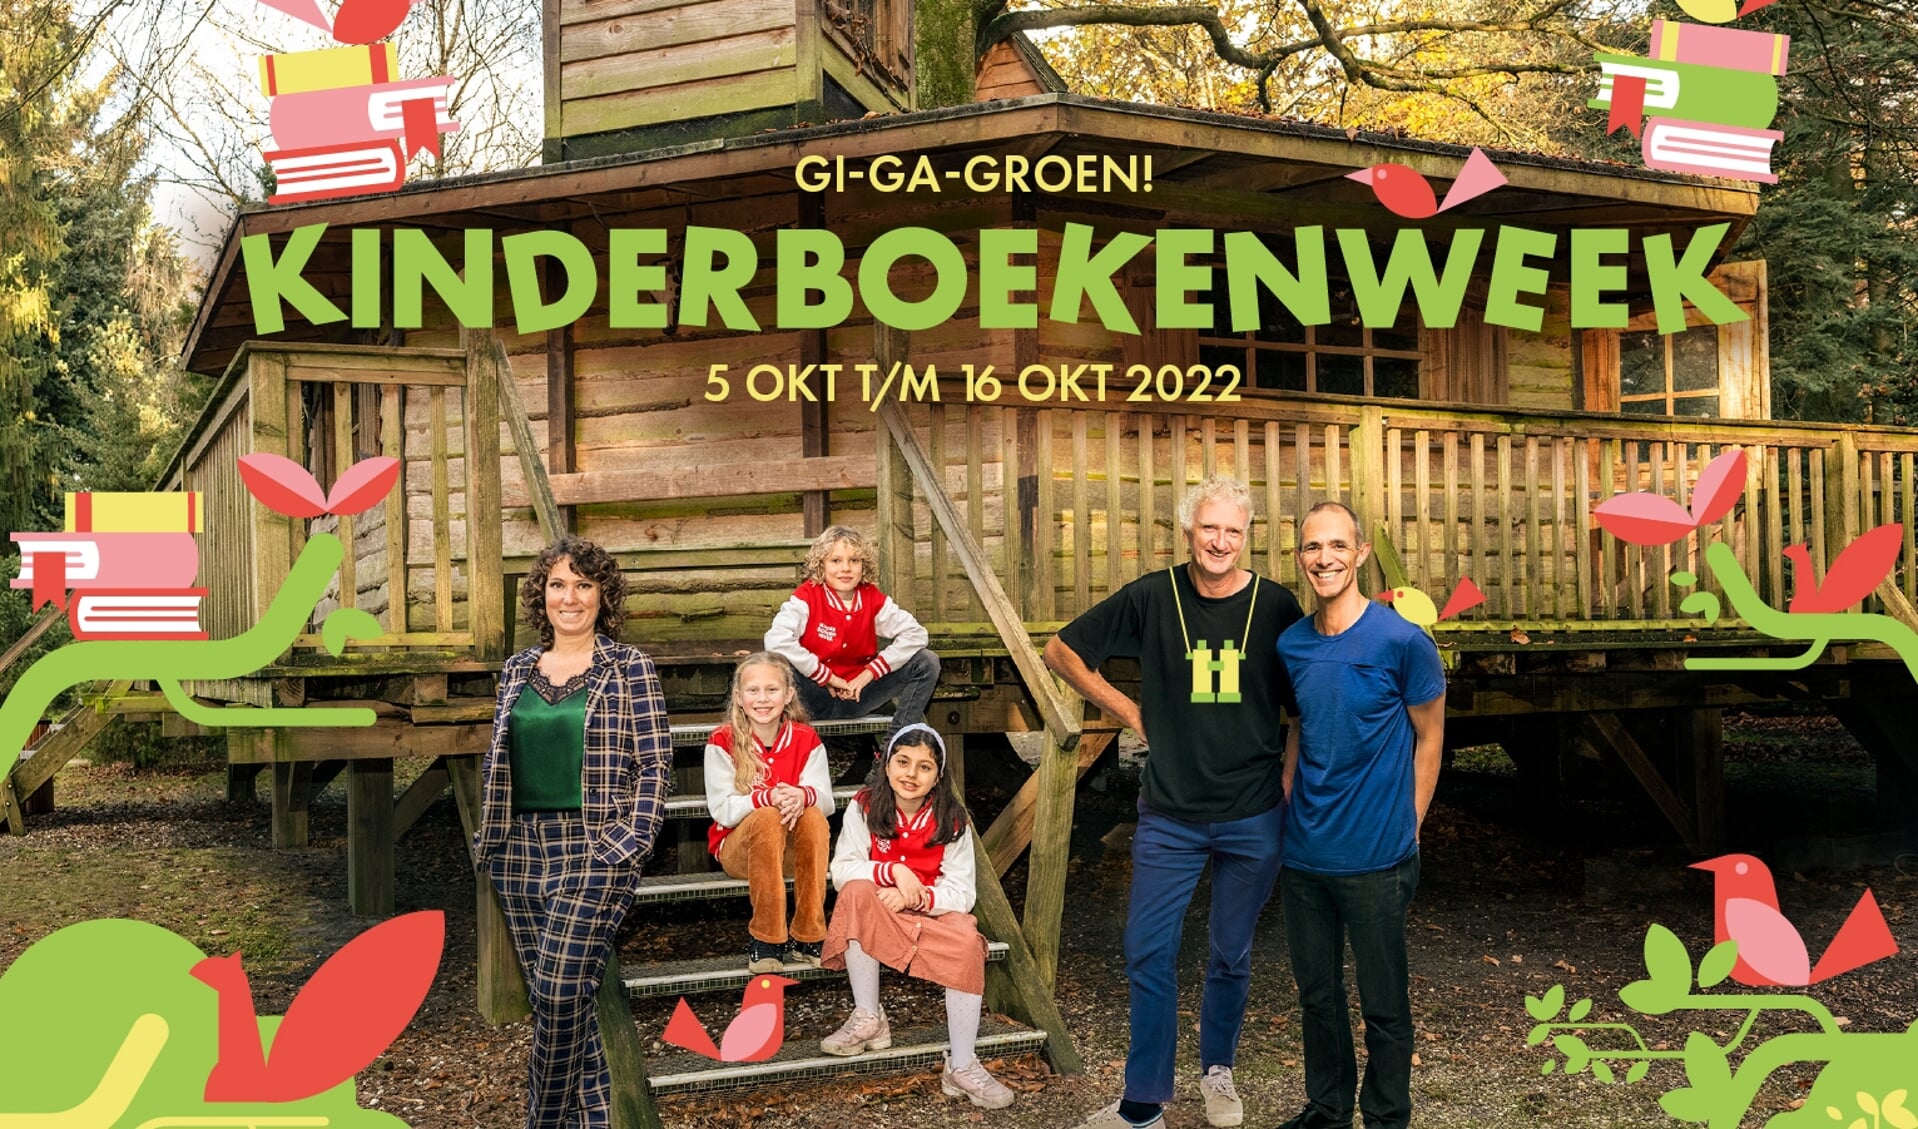 Van 5 tot en met 16 oktober is het in heel Nederland Kinderboekenweek met dit jaar als thema ‘Gi-Ga-Groen’. 